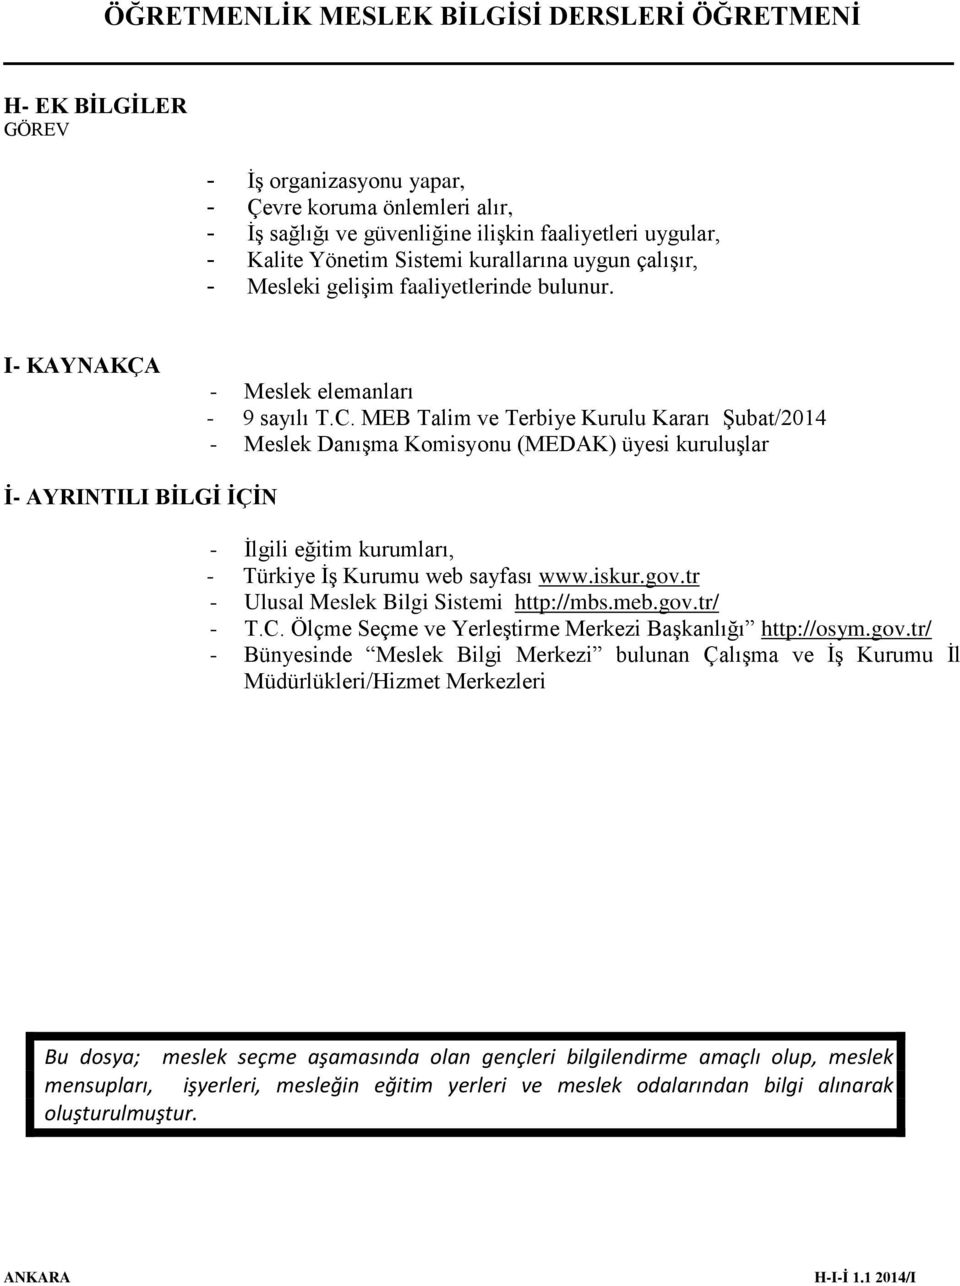 MEB Talim ve Terbiye Kurulu Kararı Şubat/2014 - Meslek Danışma Komisyonu (MEDAK) üyesi kuruluşlar İ- AYRINTILI BİLGİ İÇİN - İlgili eğitim kurumları, - Türkiye İş Kurumu web sayfası www.iskur.gov.